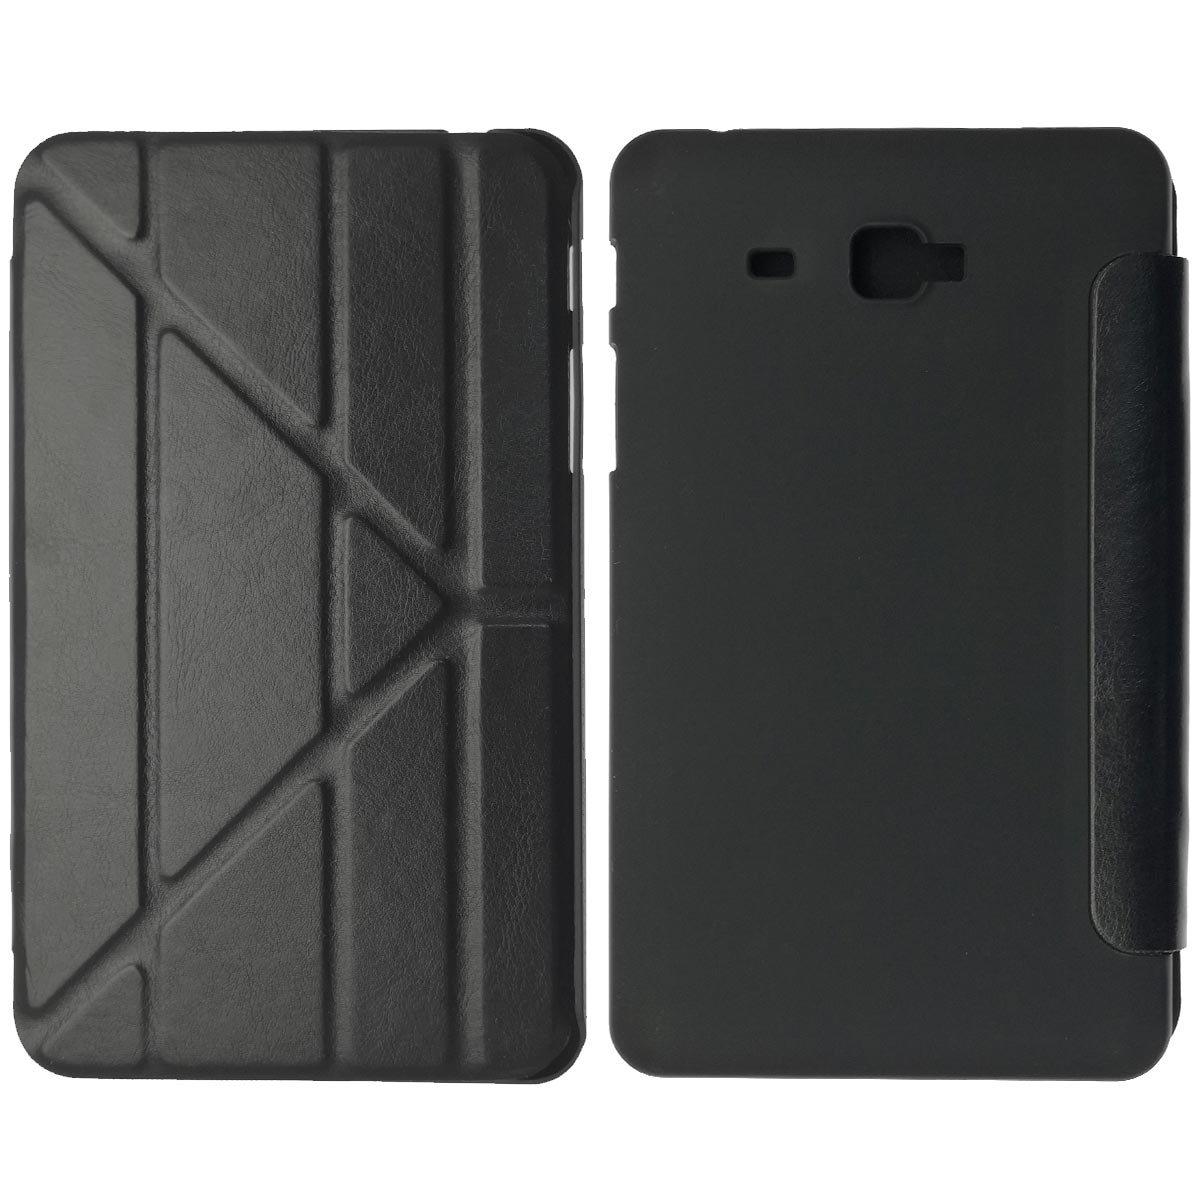 Чехол книжка iRidium для планшета SAMSUNG Galaxy Tab A 7.0 (SM-T280, SM-T285), экокожа, цвет черный